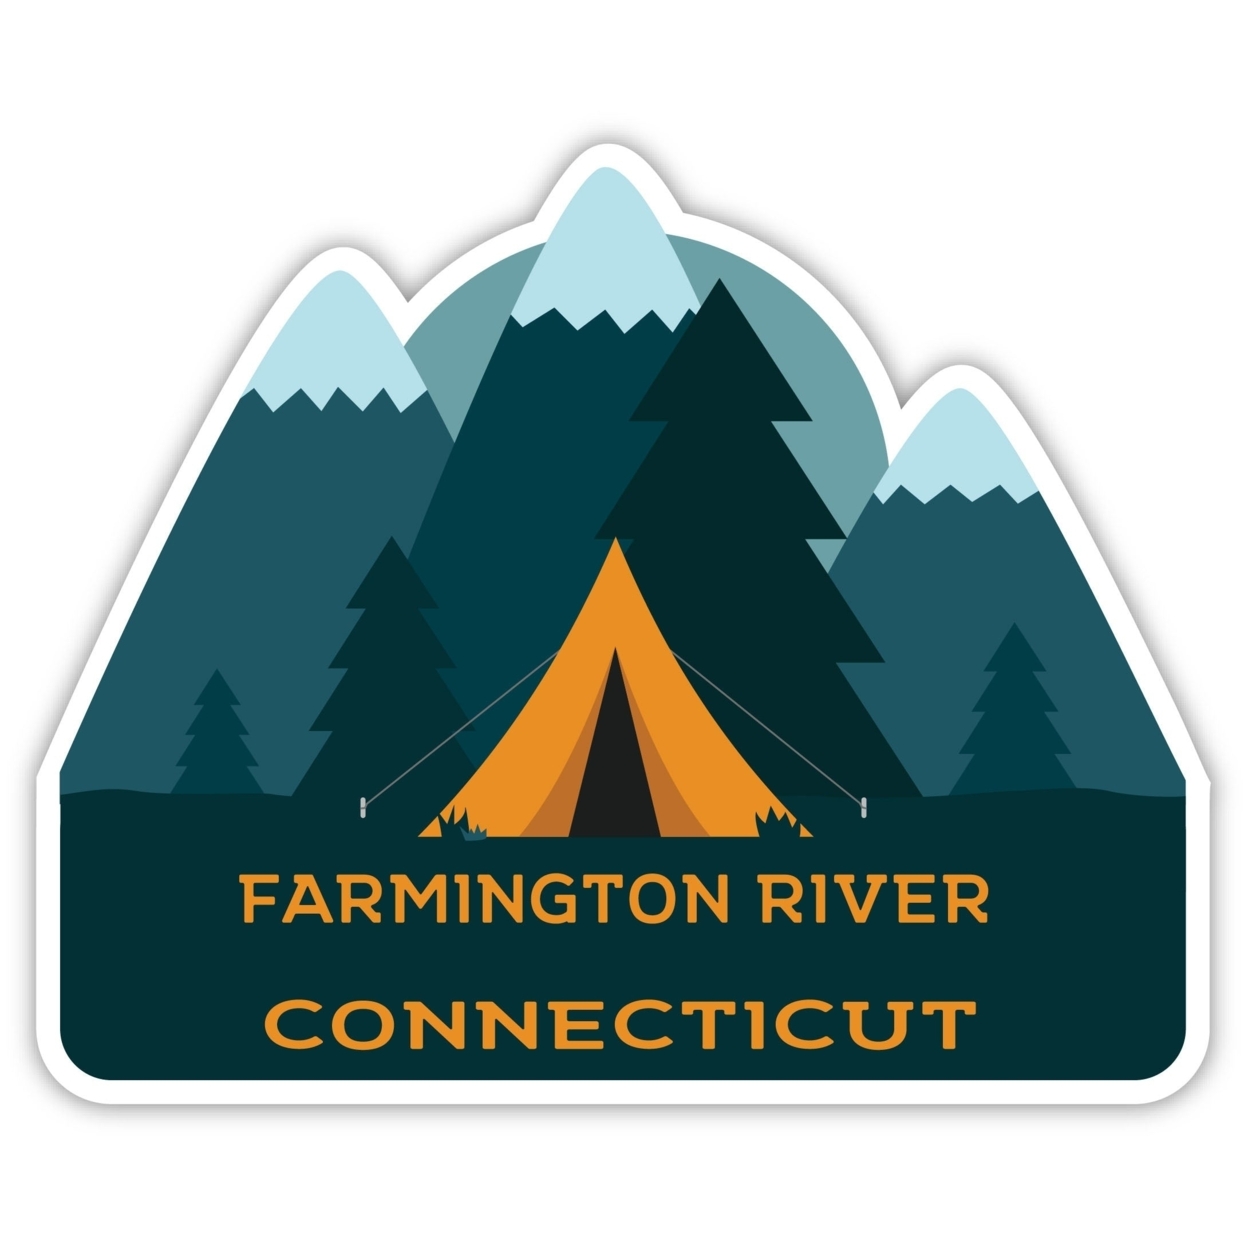 Farmington River Connecticut Souvenir Decorative Stickers (Choose Theme And Size) - Single Unit, 10-Inch, Tent